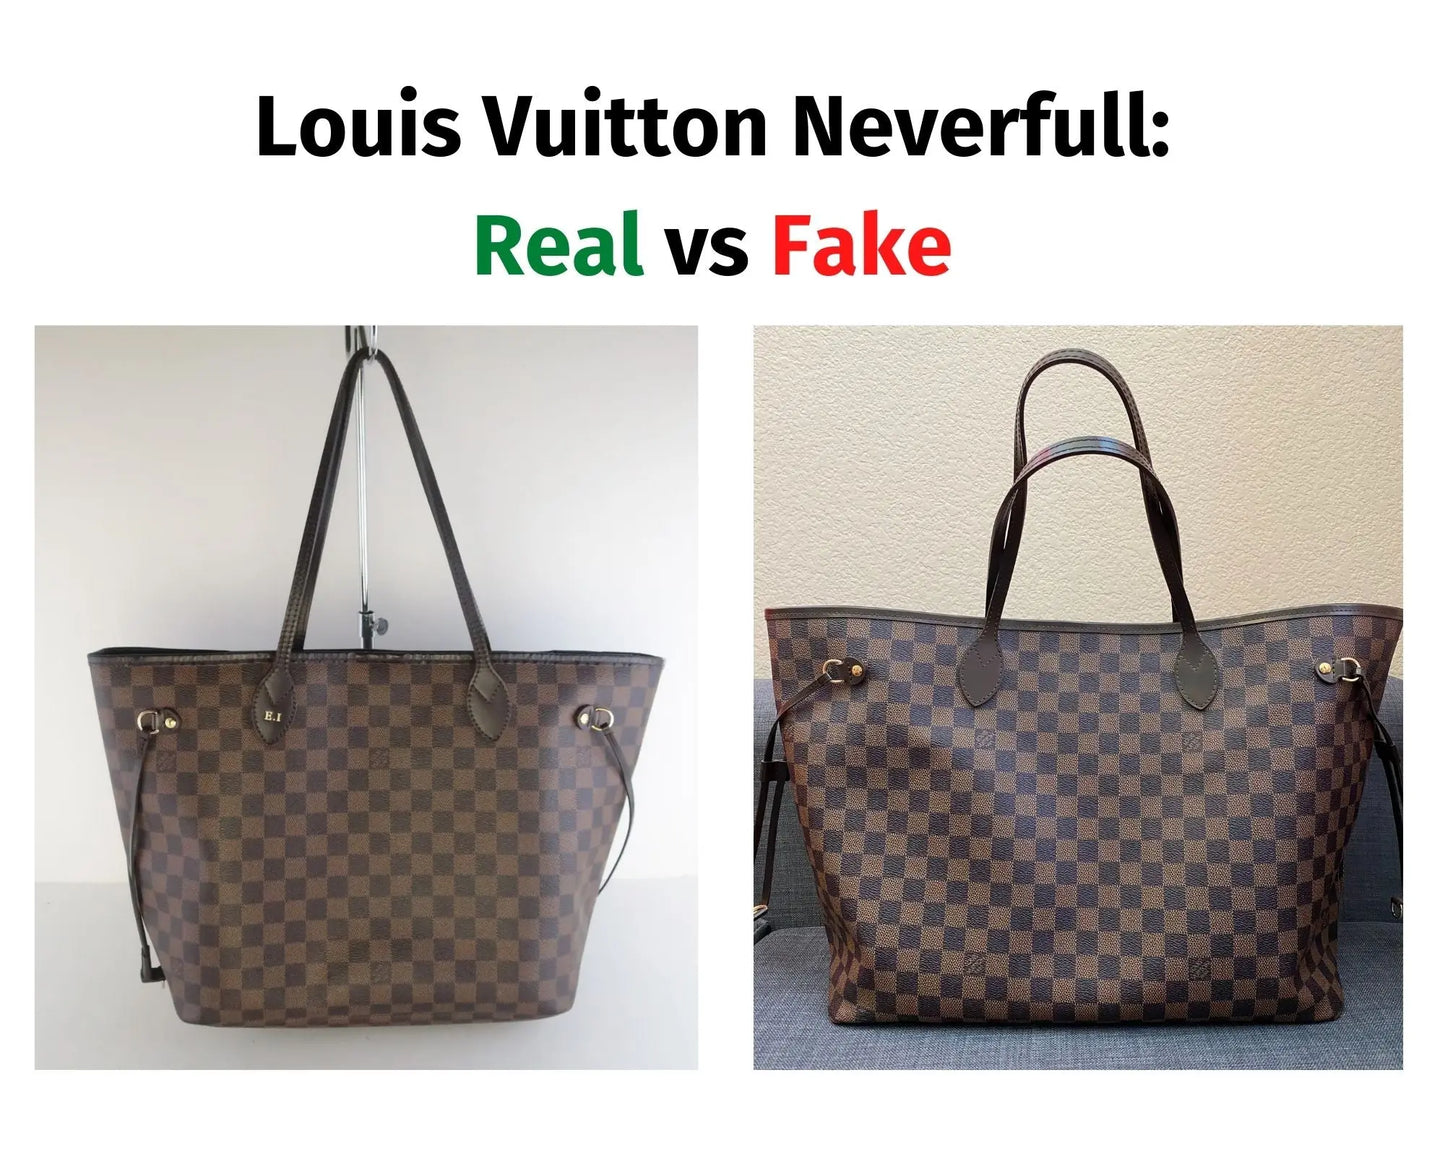 real lv wallet vs fake